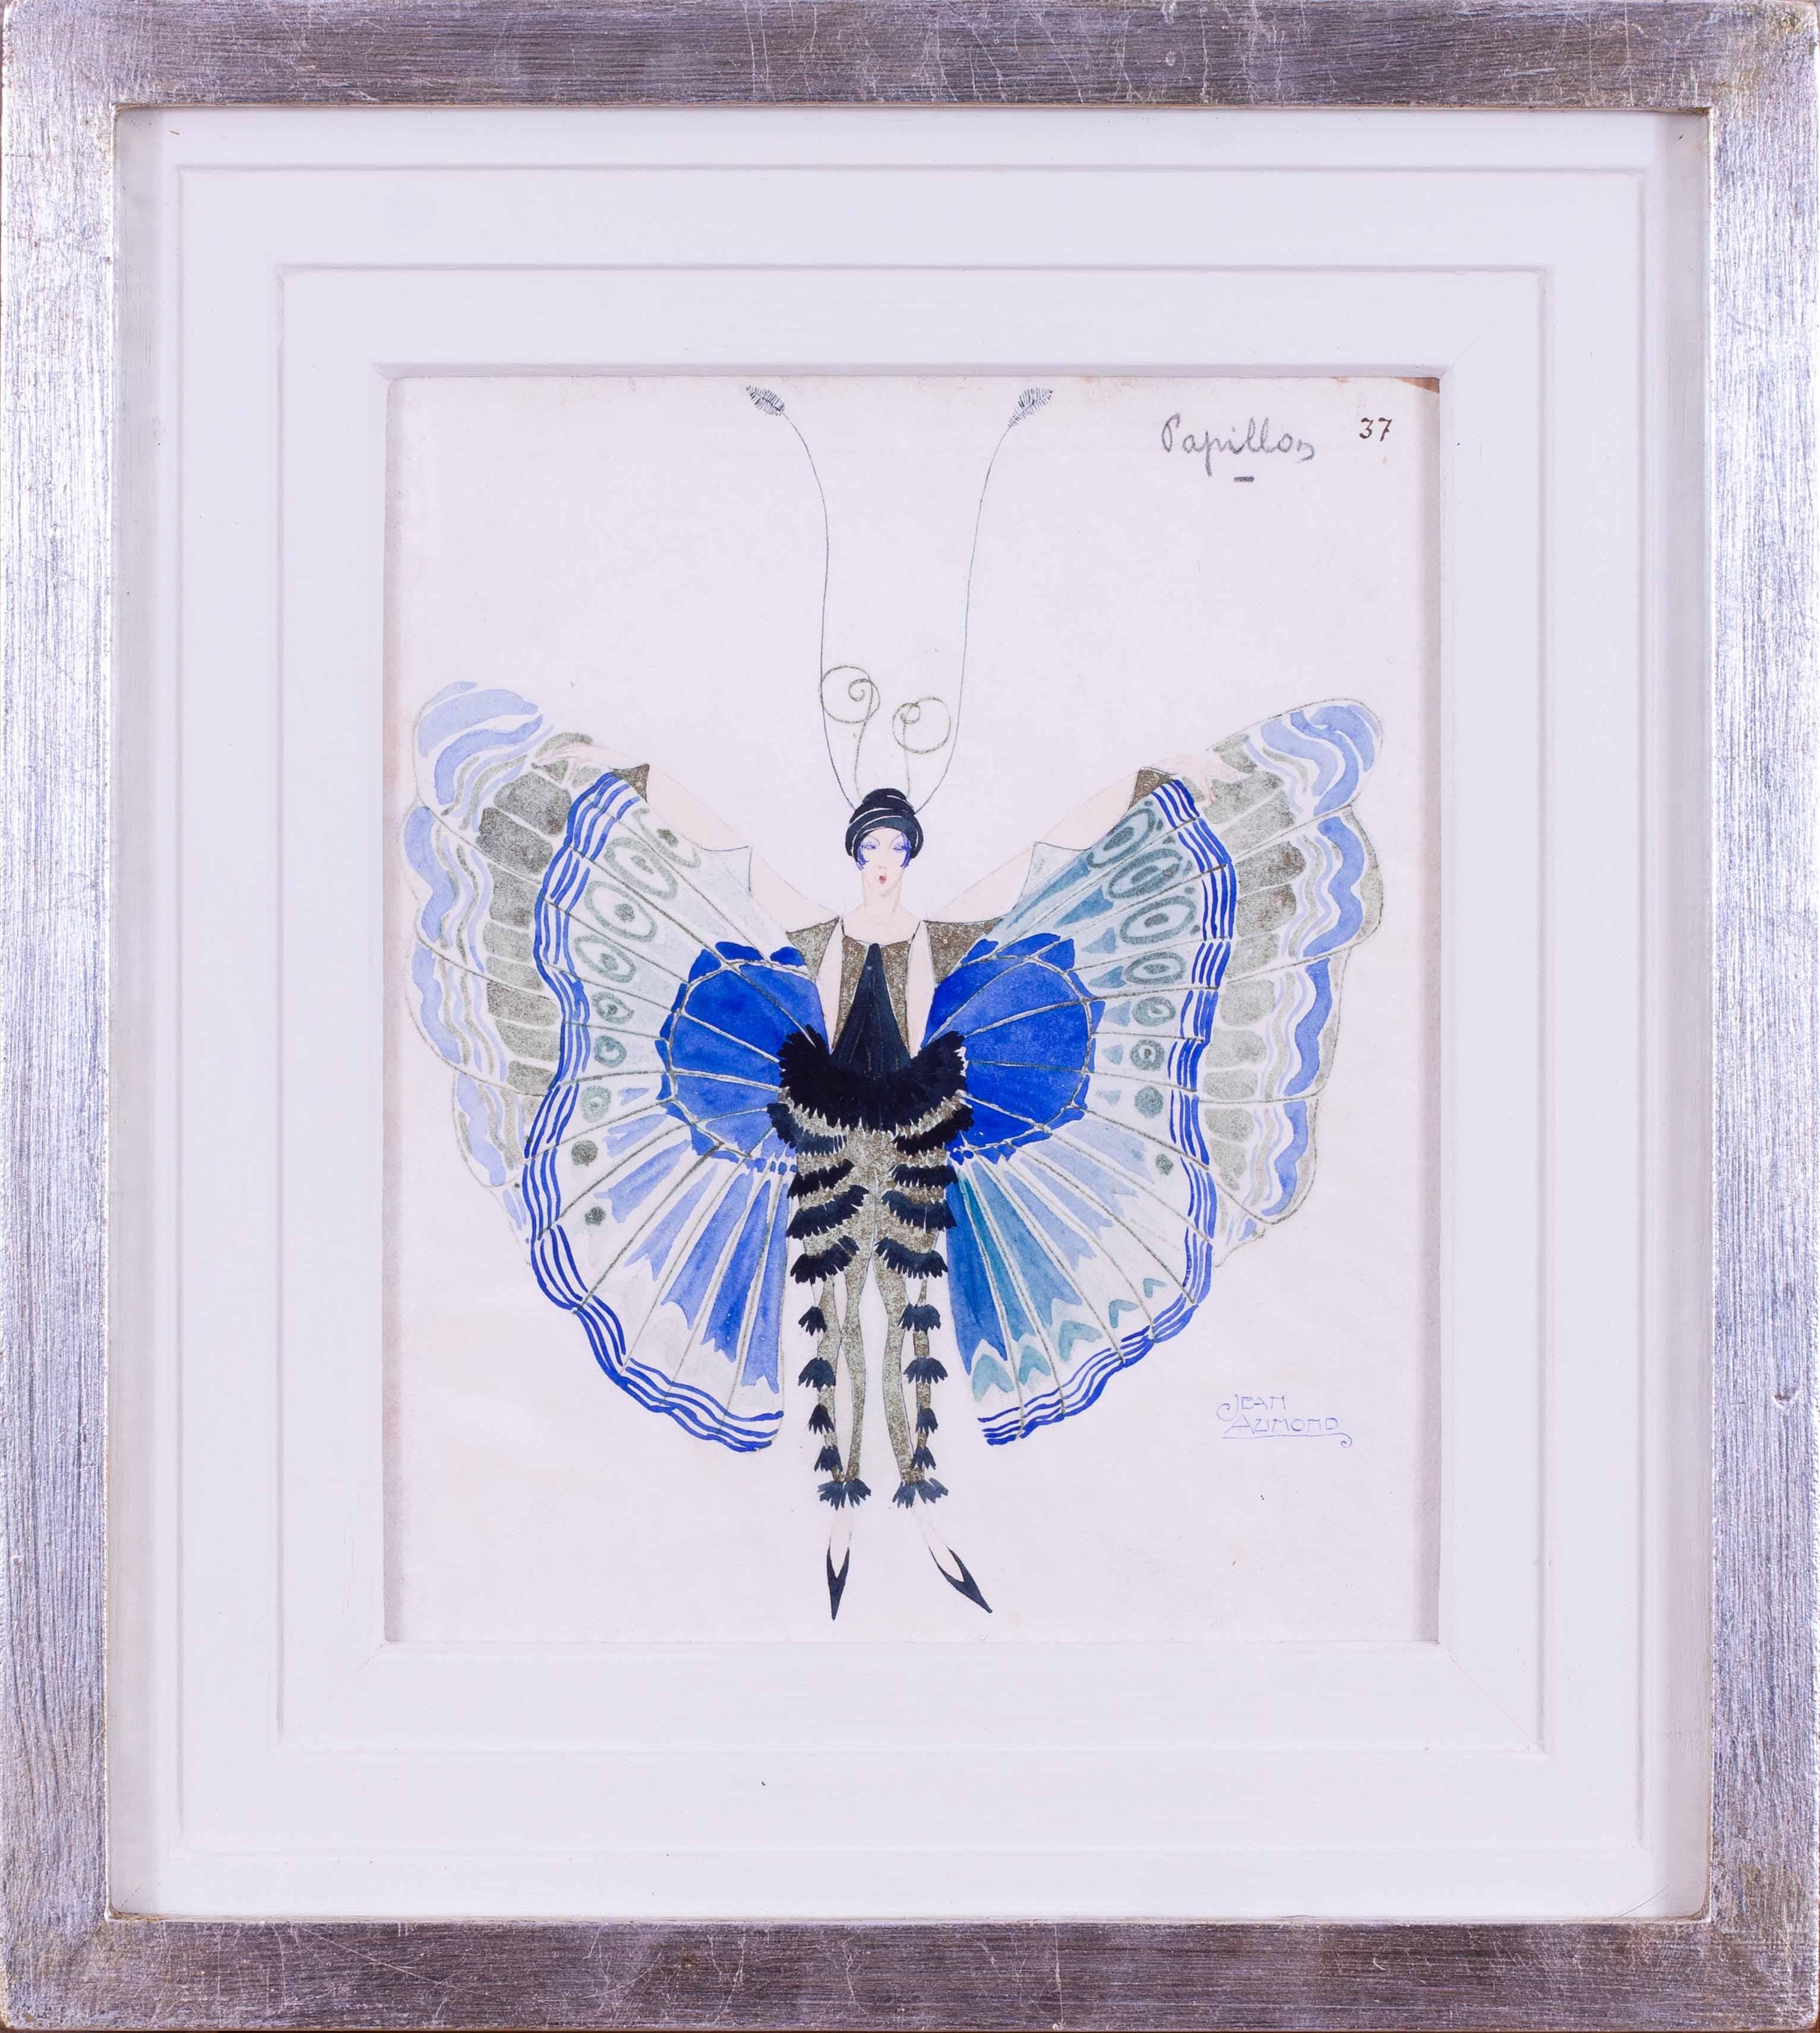 Une étude de costume Art déco très charmante et élégante d'une dame en costume de papillon bleu par le costumier français Jean Aumond.  Jean Aumond (français, actif de 1919 à 1965)  était considéré comme l'un des costumiers les plus brillants et les